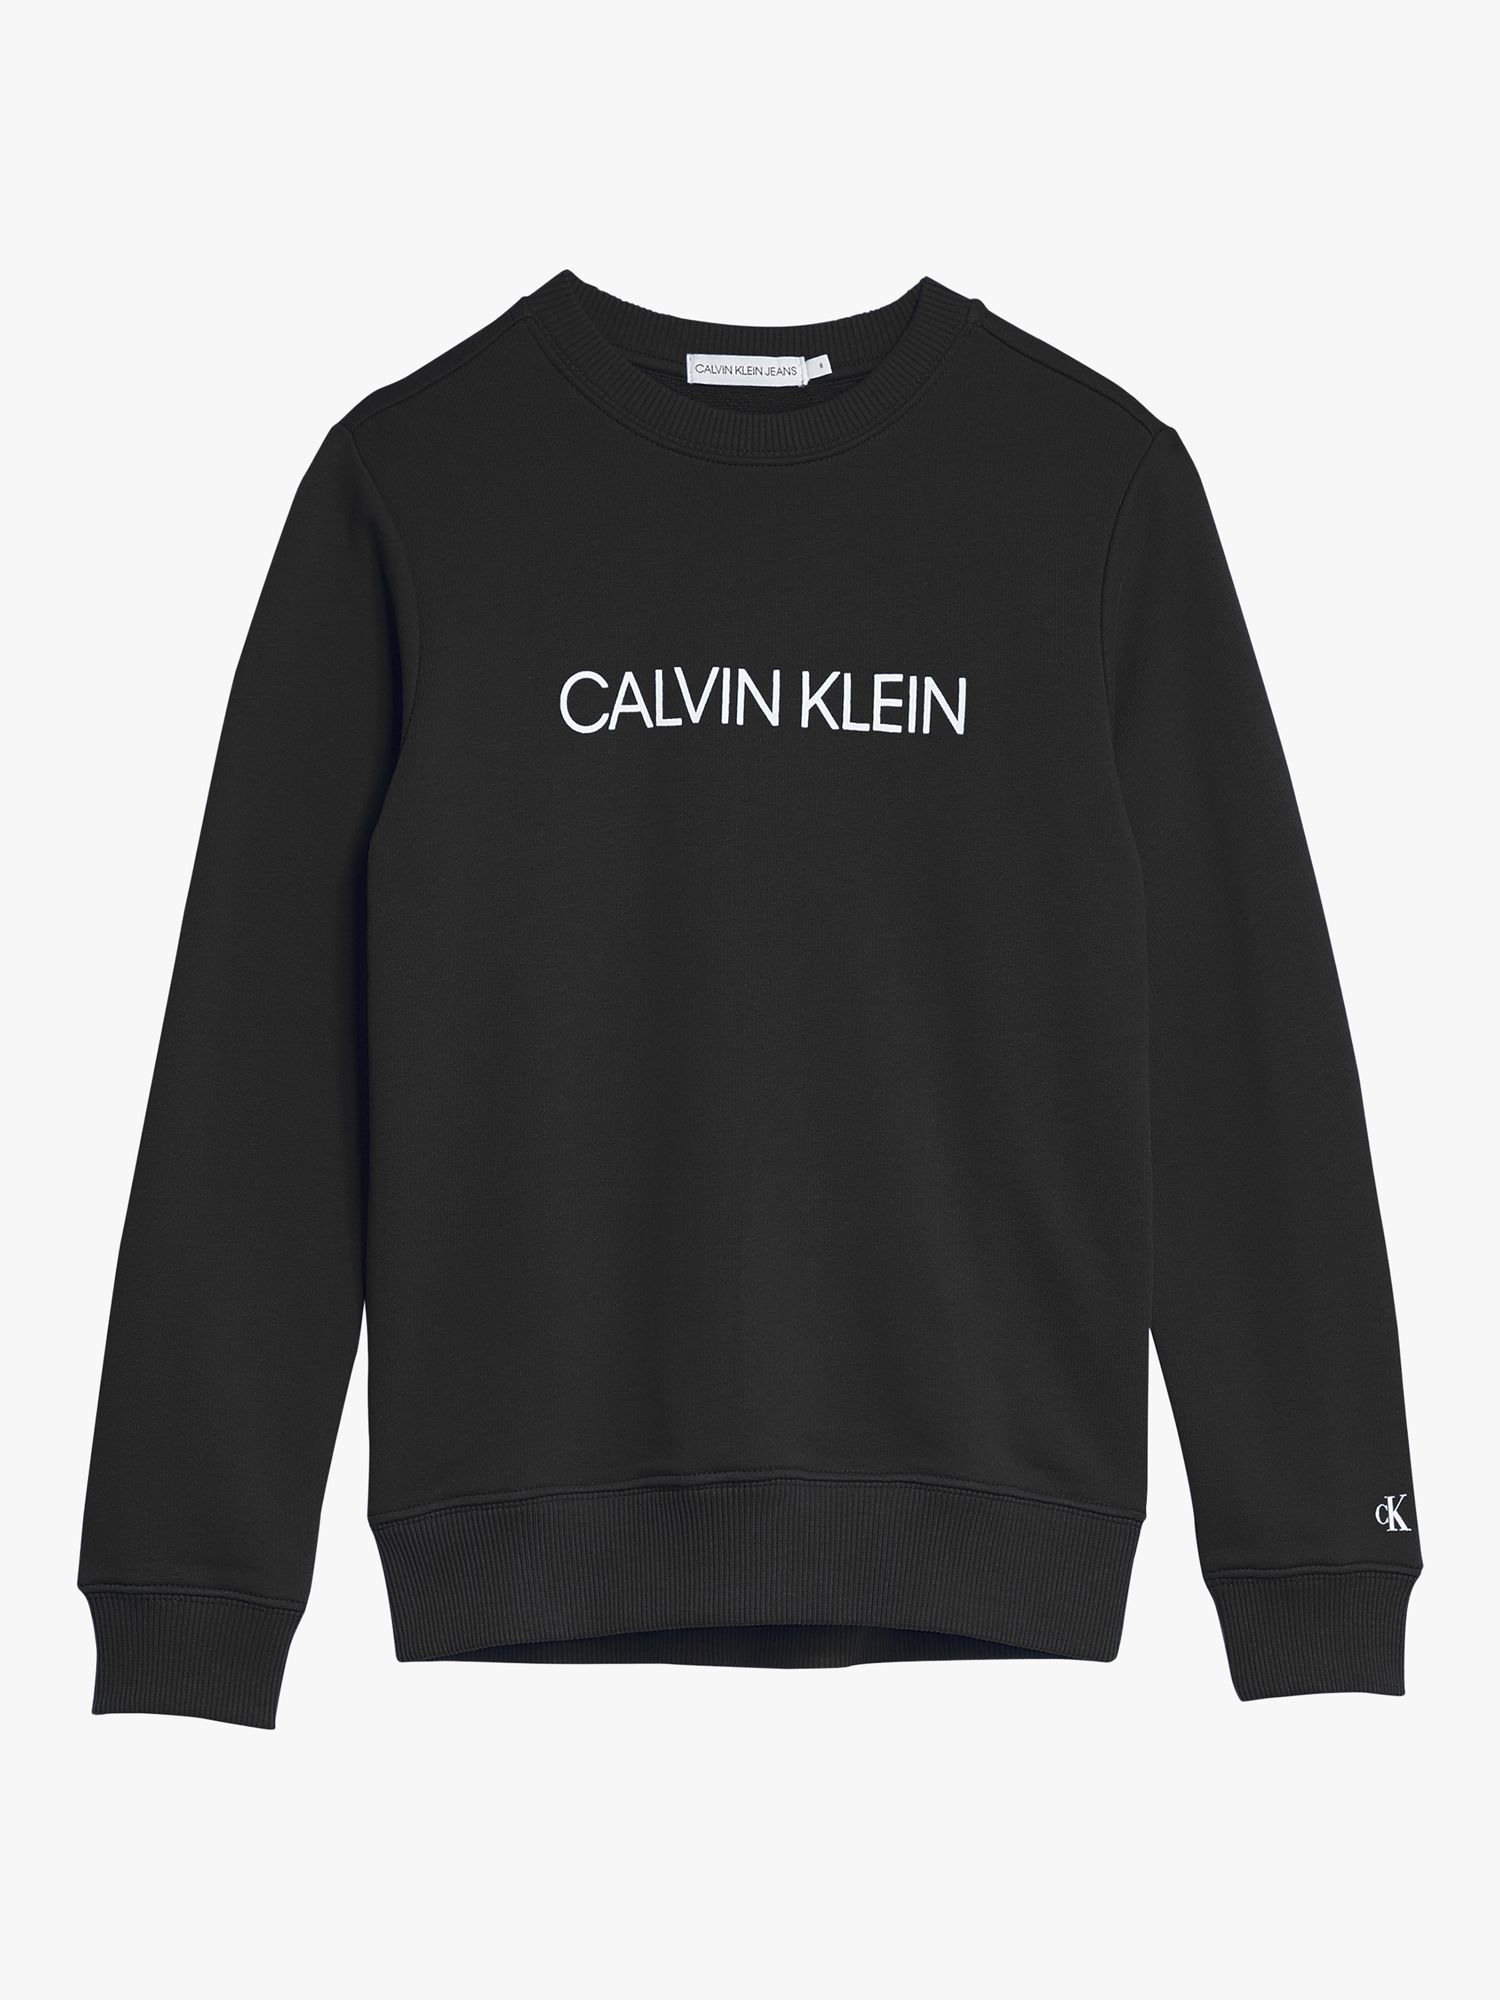 Calvin Klein Kids' Logo Sweatshirt, Black at John Lewis & Partners